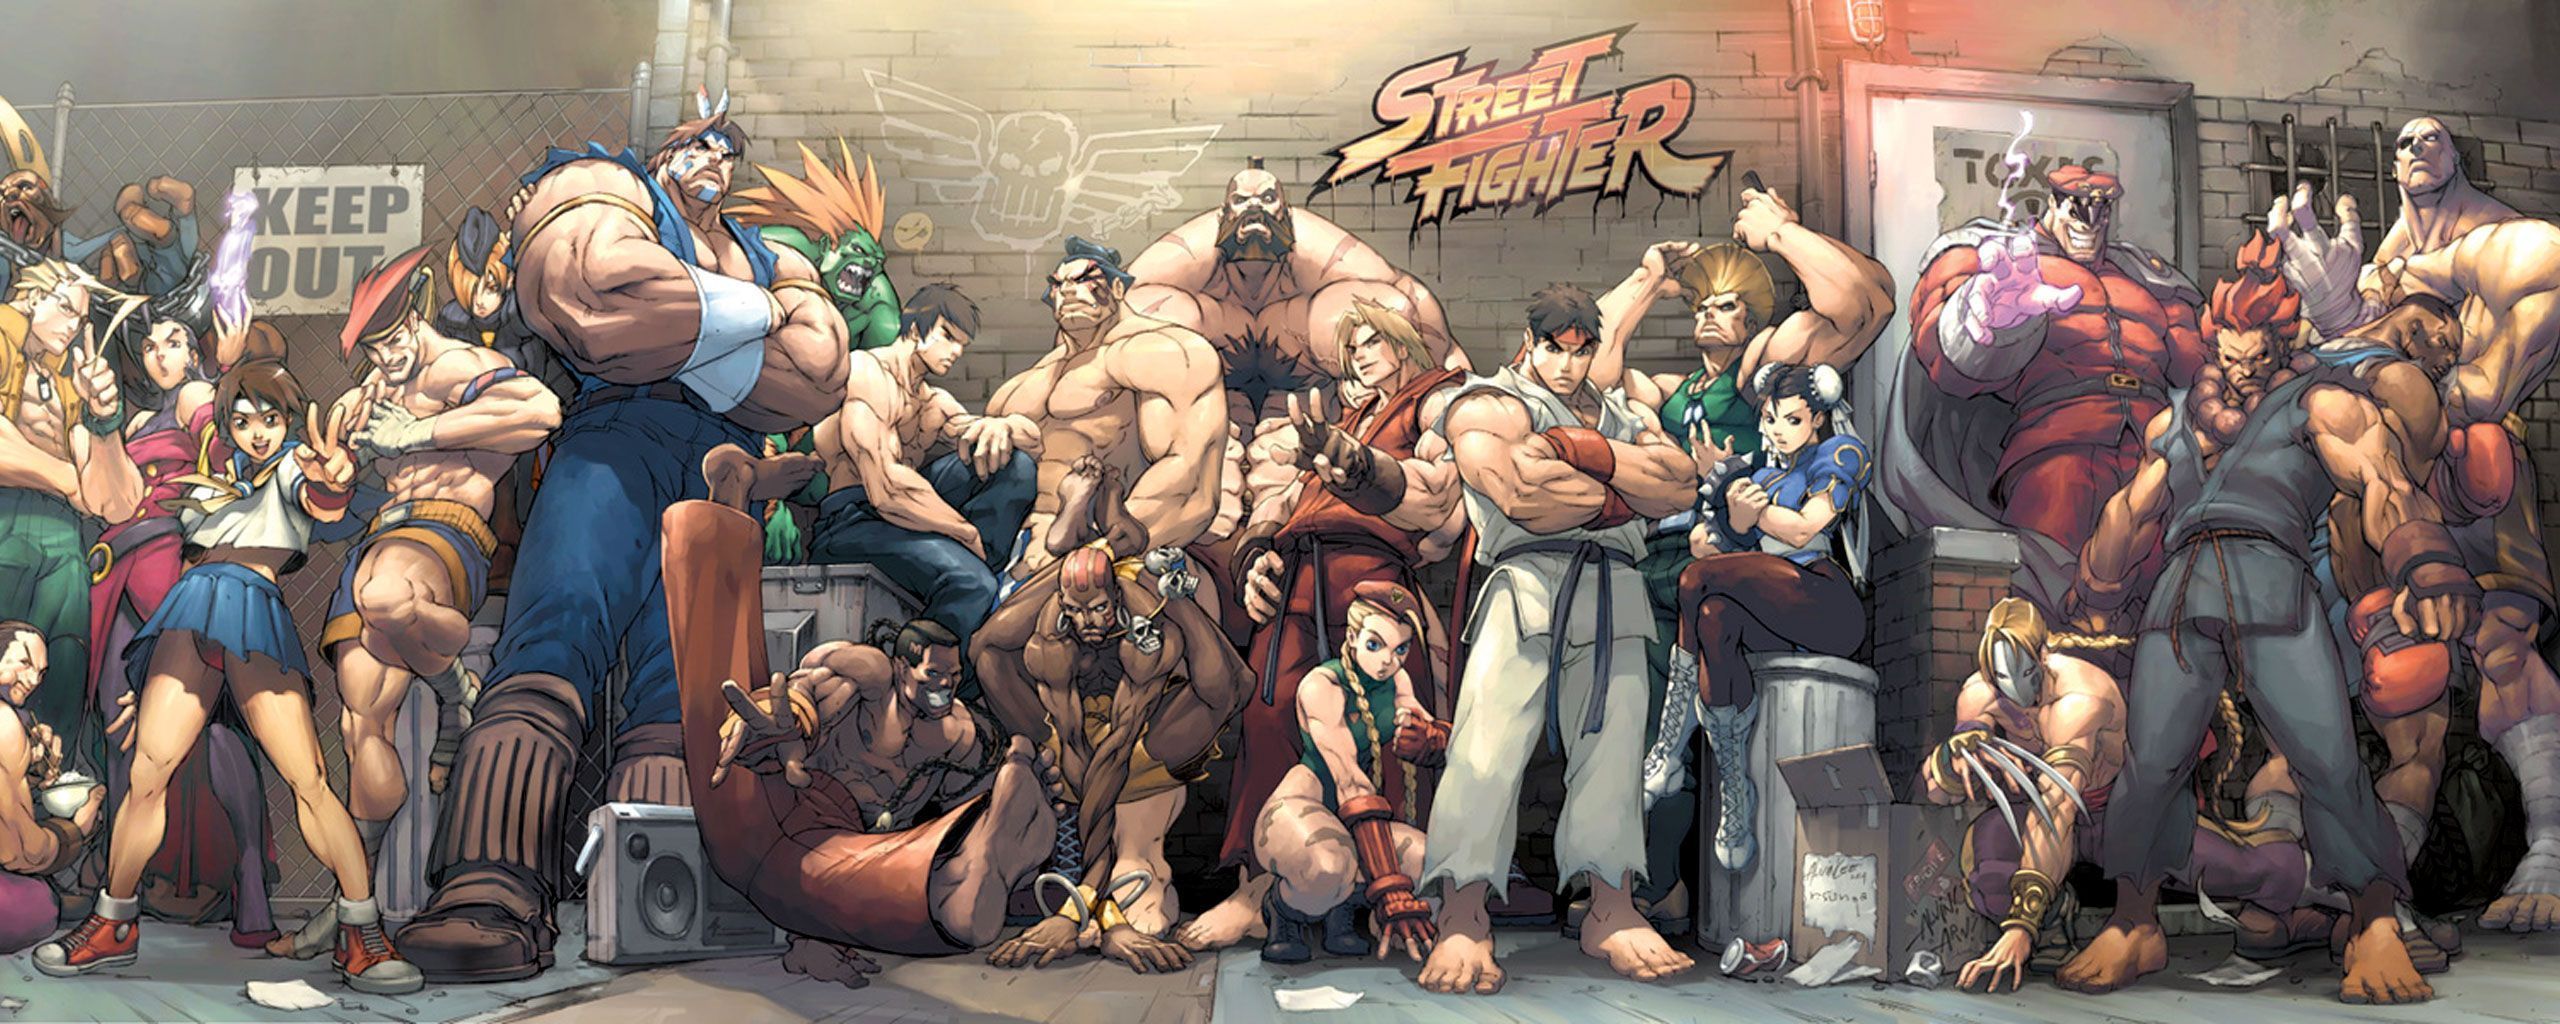 Street Fighter Wallpaper Hd-51622q2 - Street Fighter , HD Wallpaper & Backgrounds